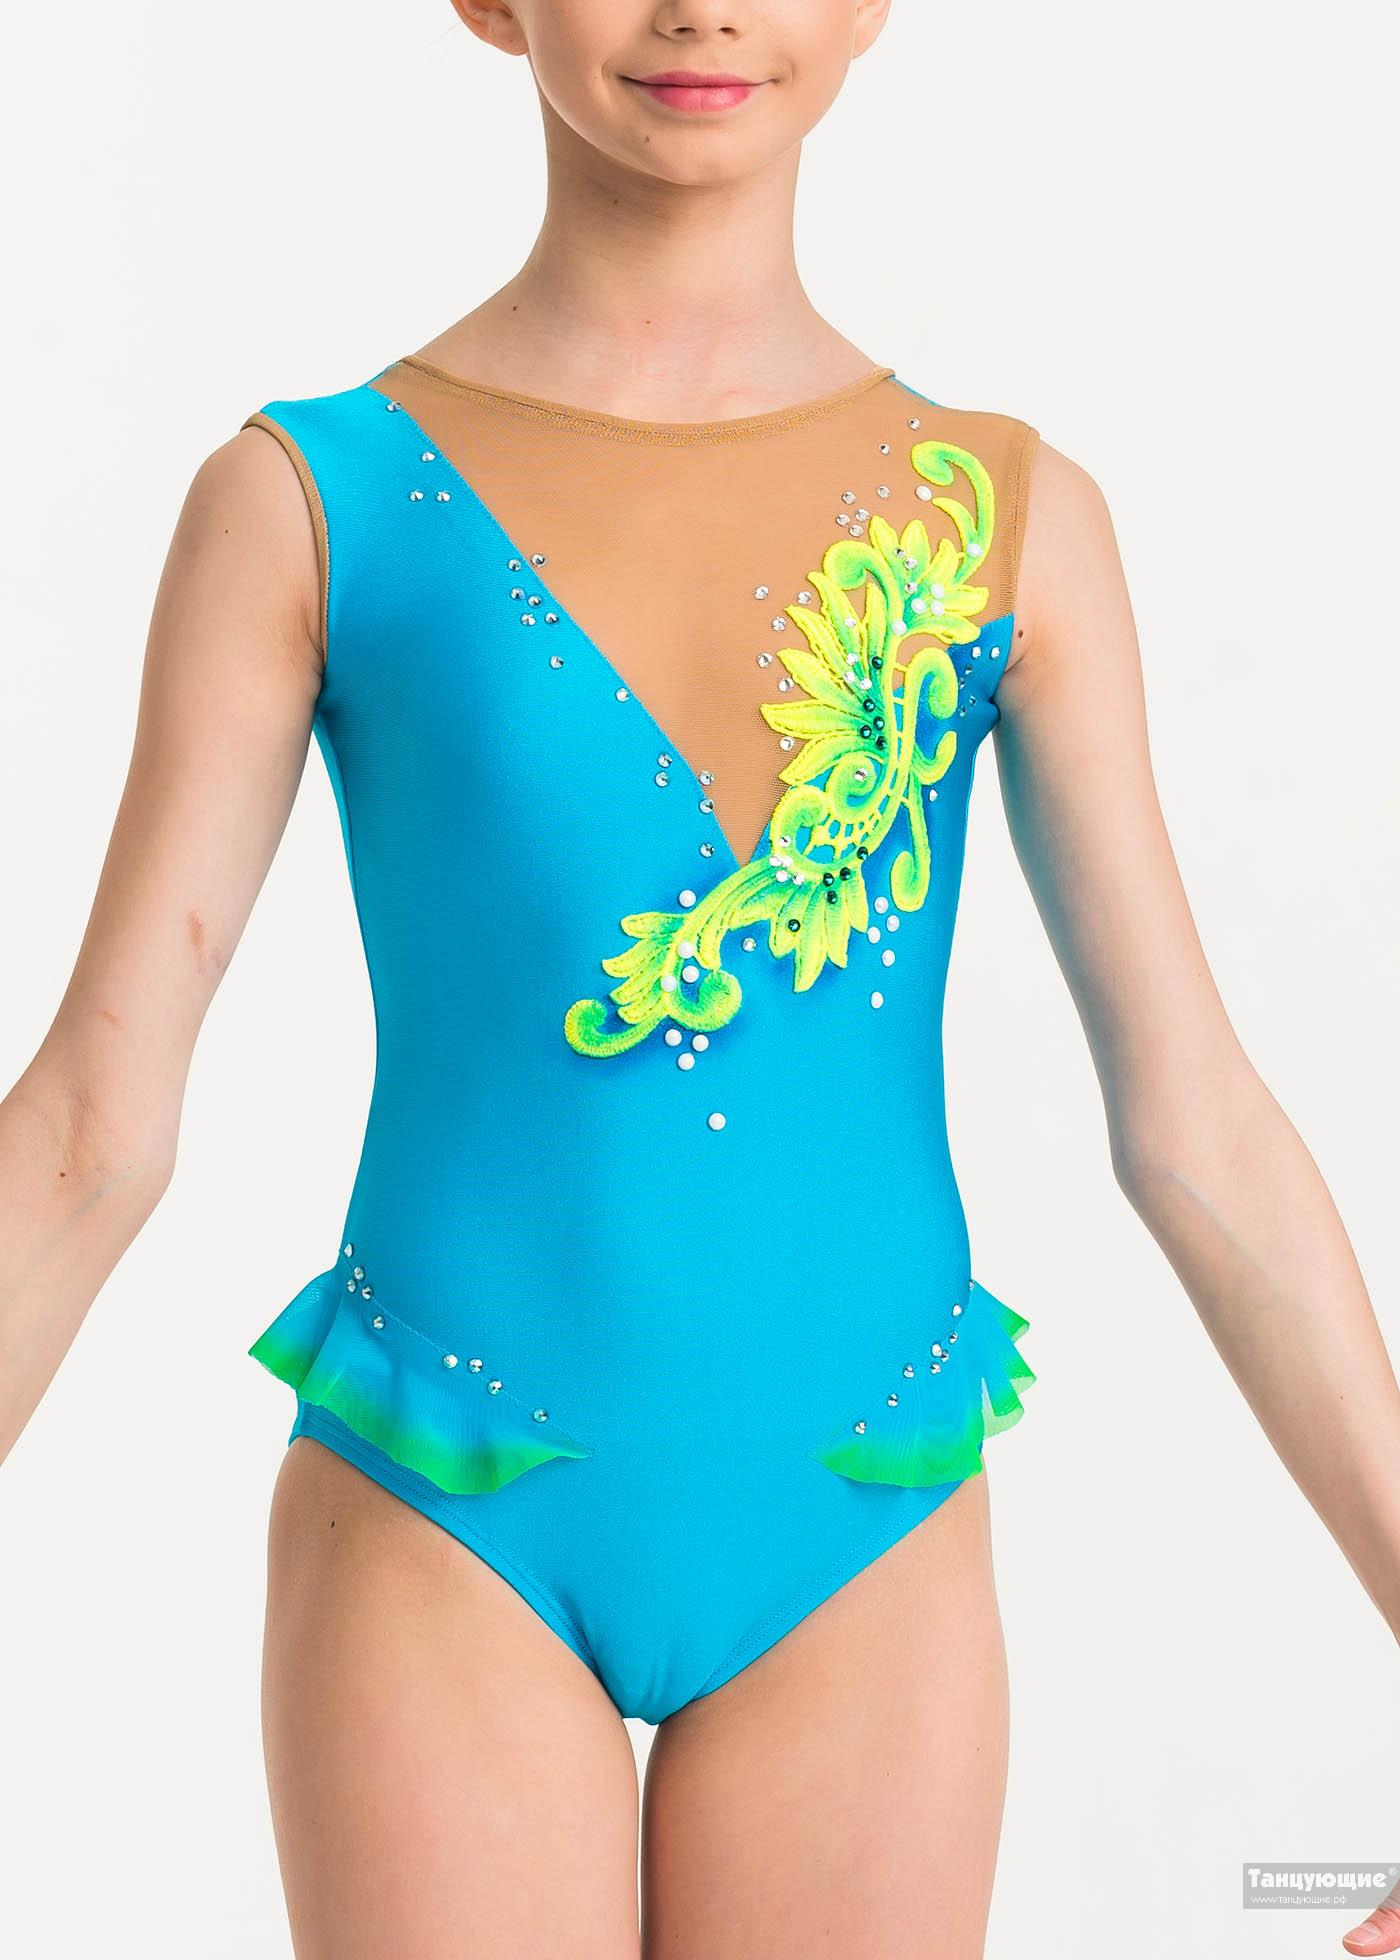 Купальник для художественной гимнастики Весенний лучик — купить в  интернет-магазине «Танцующие»